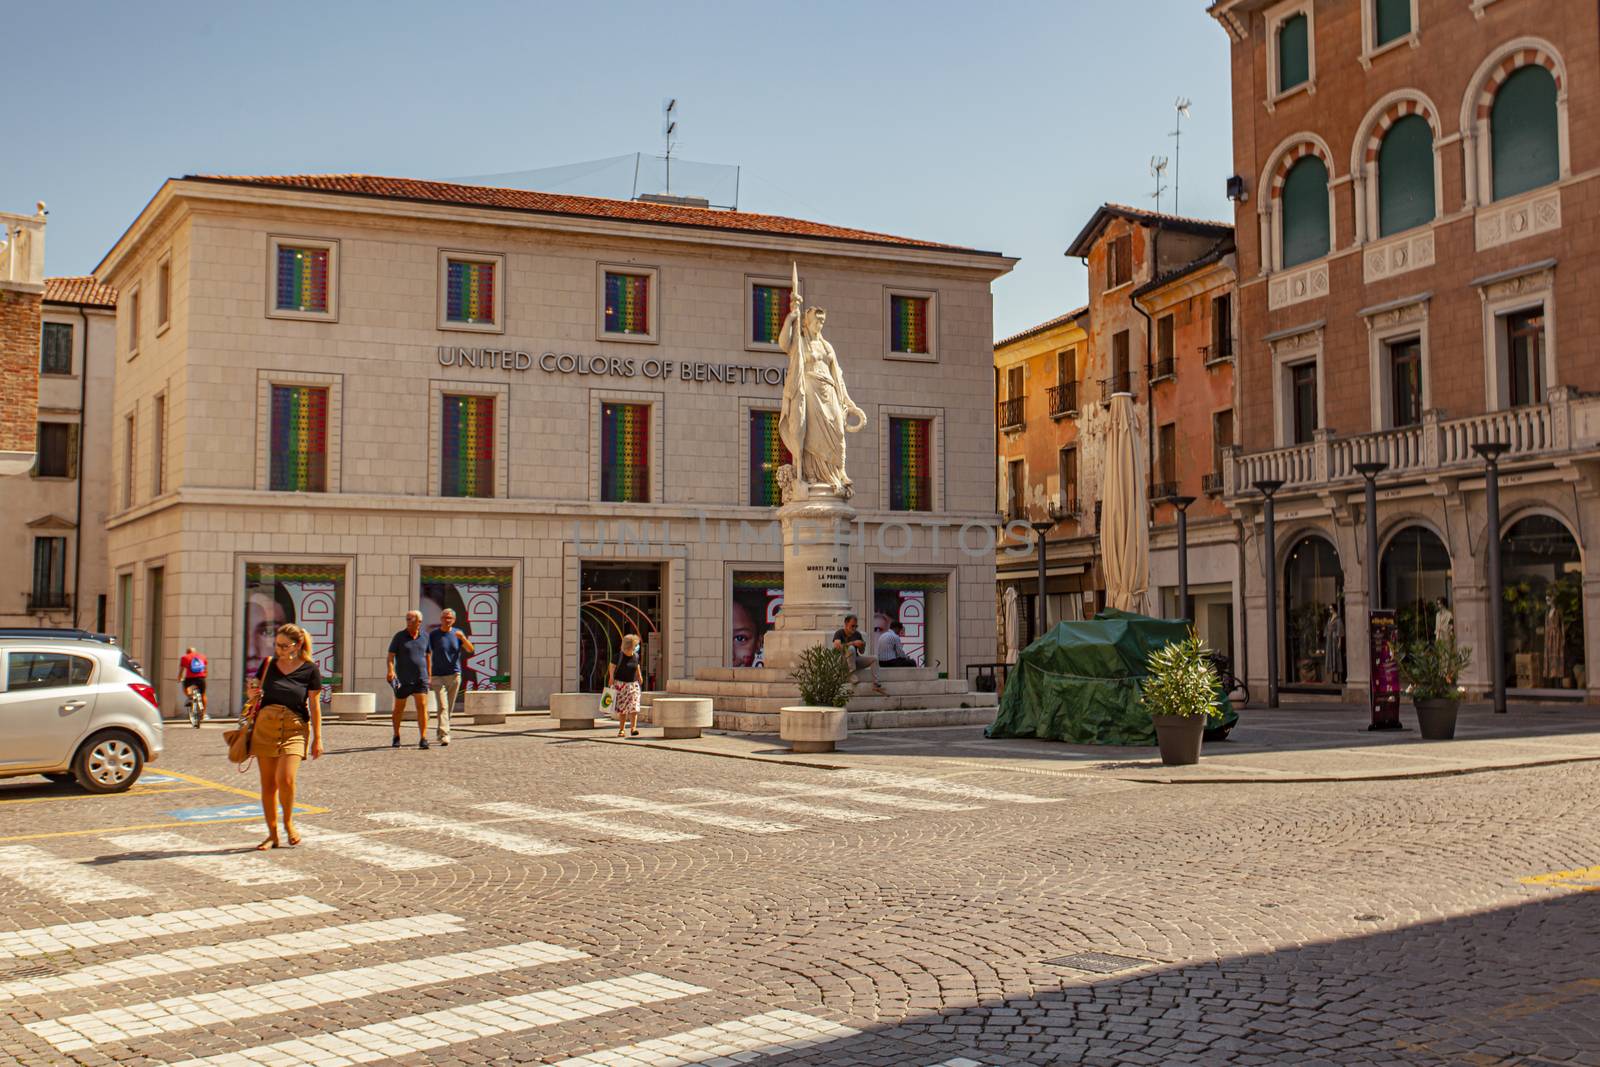 Piazza della Libertà in Treviso 7 by pippocarlot